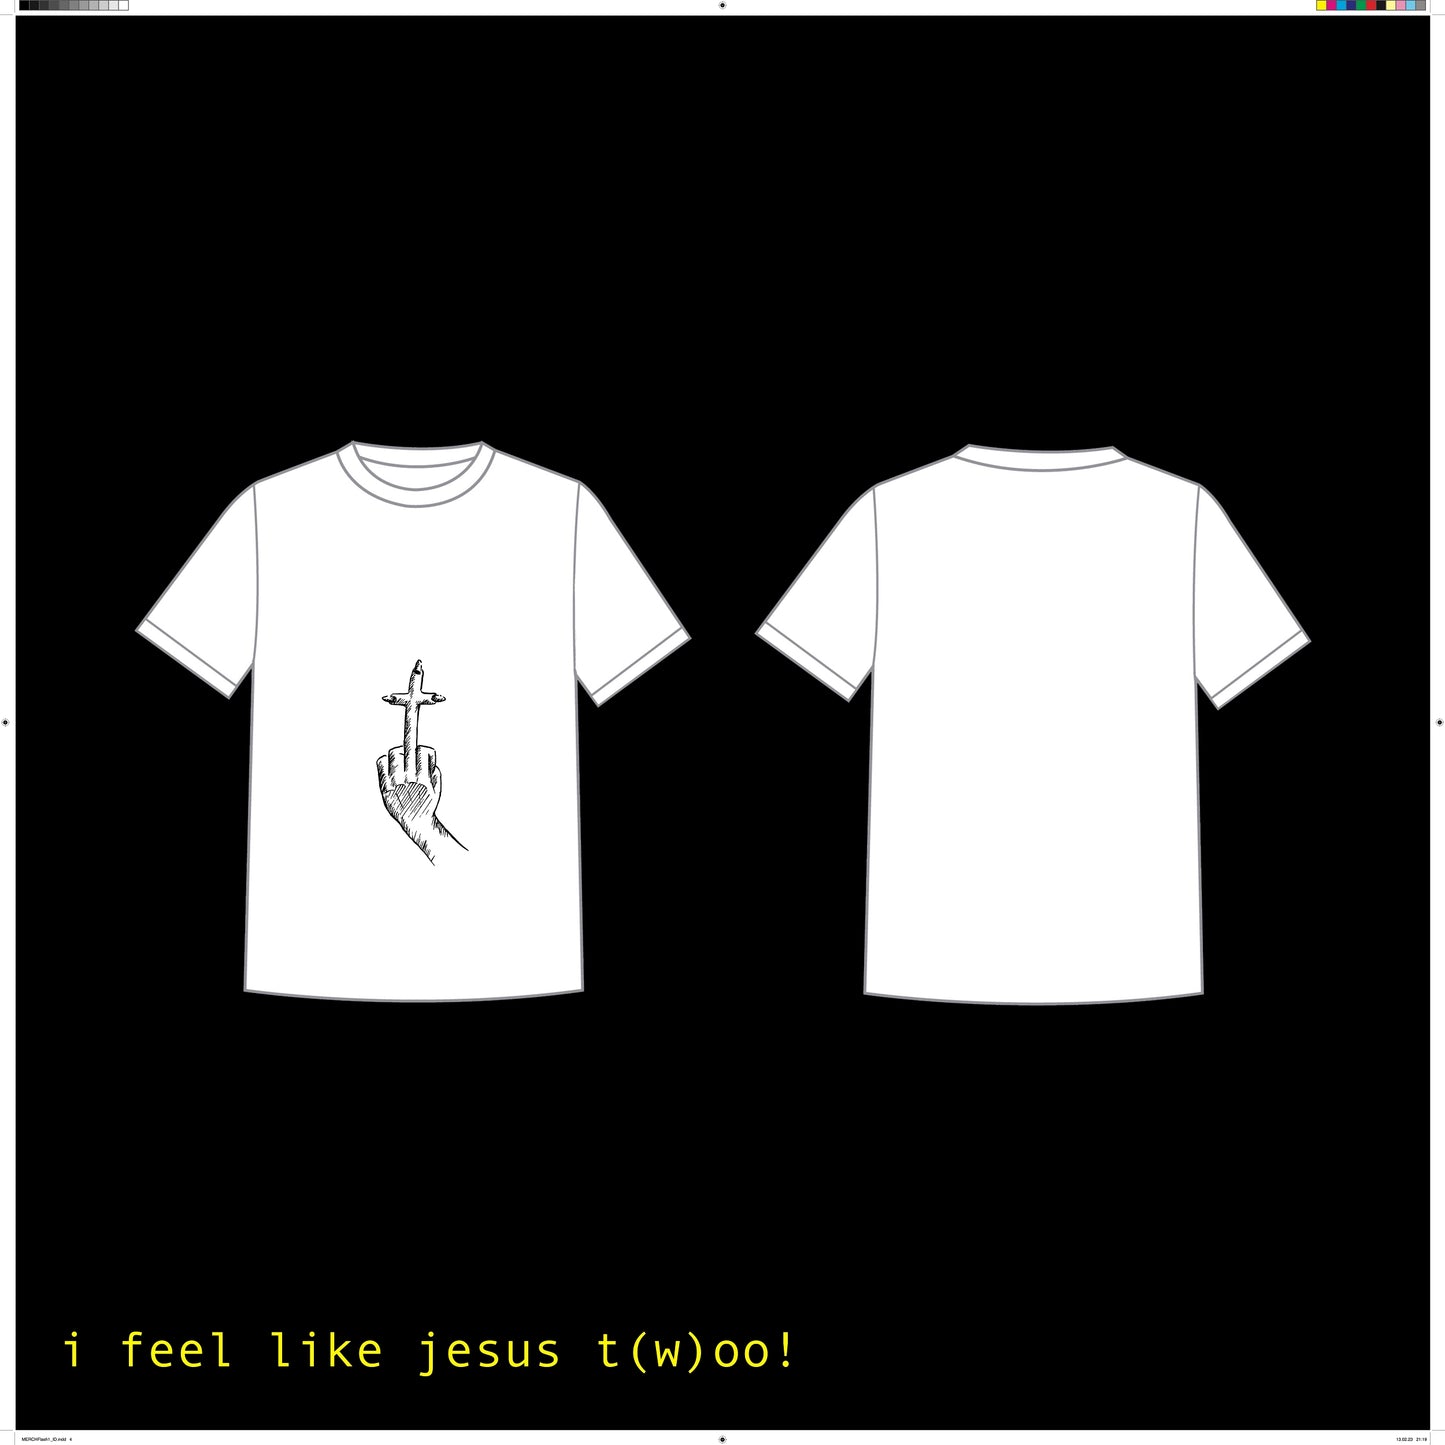 shirt no. 1 "JESUS 2"